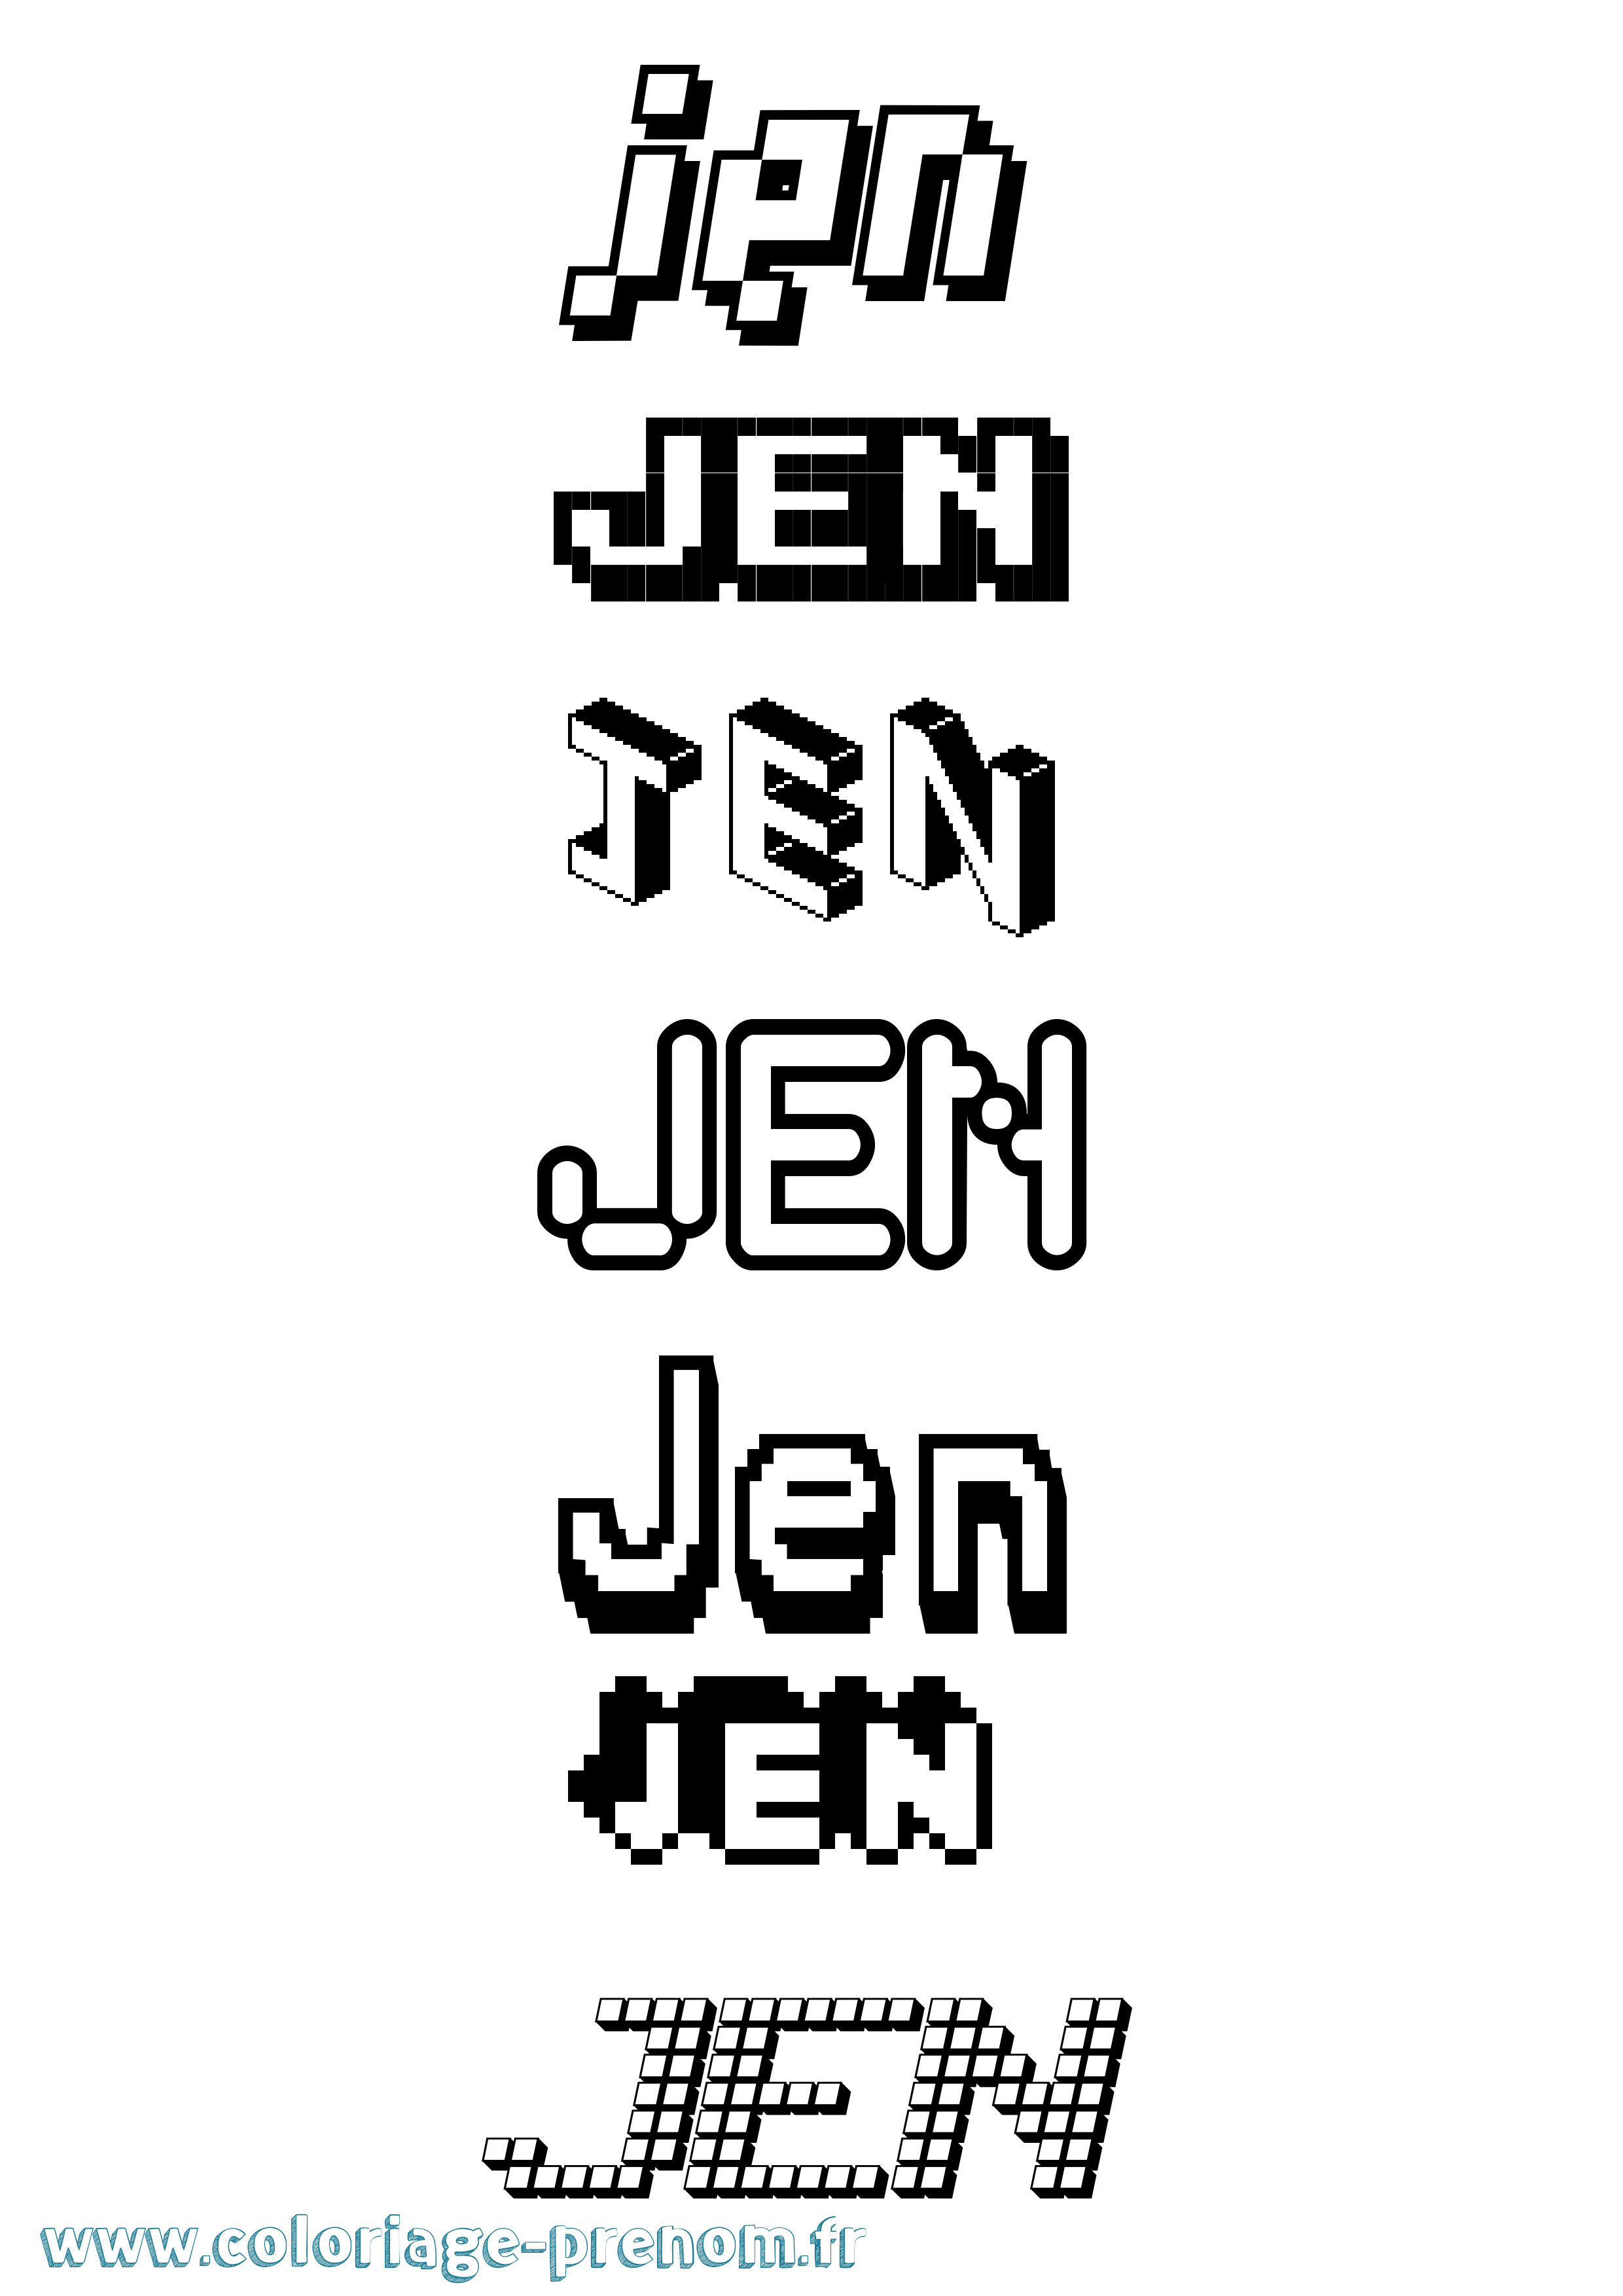 Coloriage prénom Jen Pixel